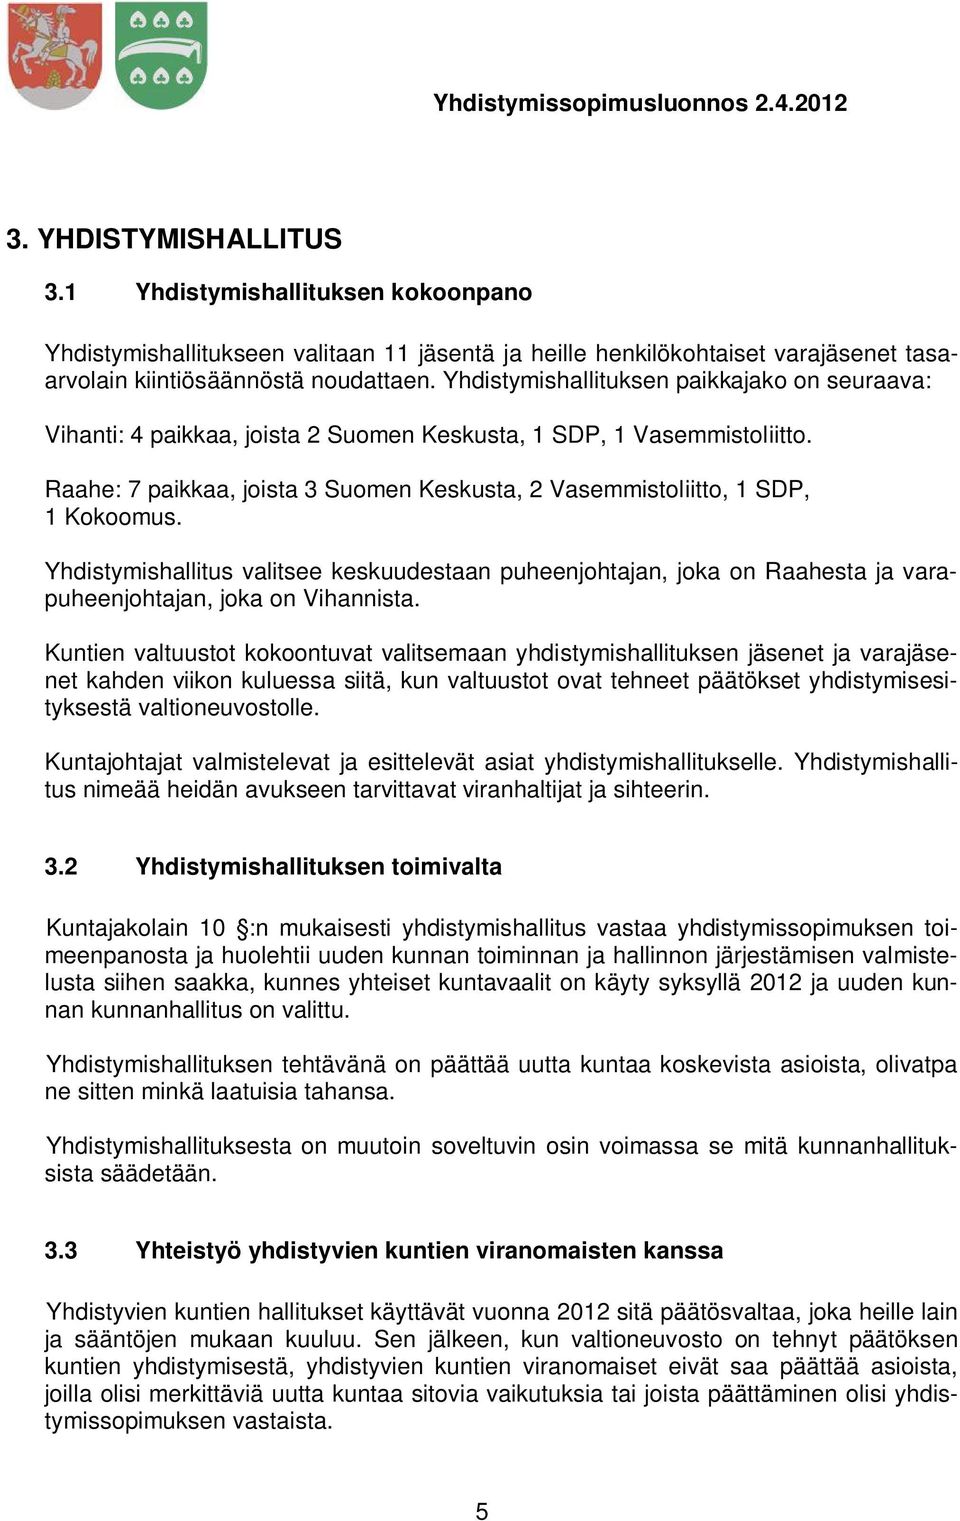 Raahe: 7 paikkaa, joista 3 Suomen Keskusta, 2 Vasemmistoliitto, 1 SDP, 1 Kokoomus. Yhdistymishallitus valitsee keskuudestaan puheenjohtajan, joka on Raahesta ja varapuheenjohtajan, joka on Vihannista.